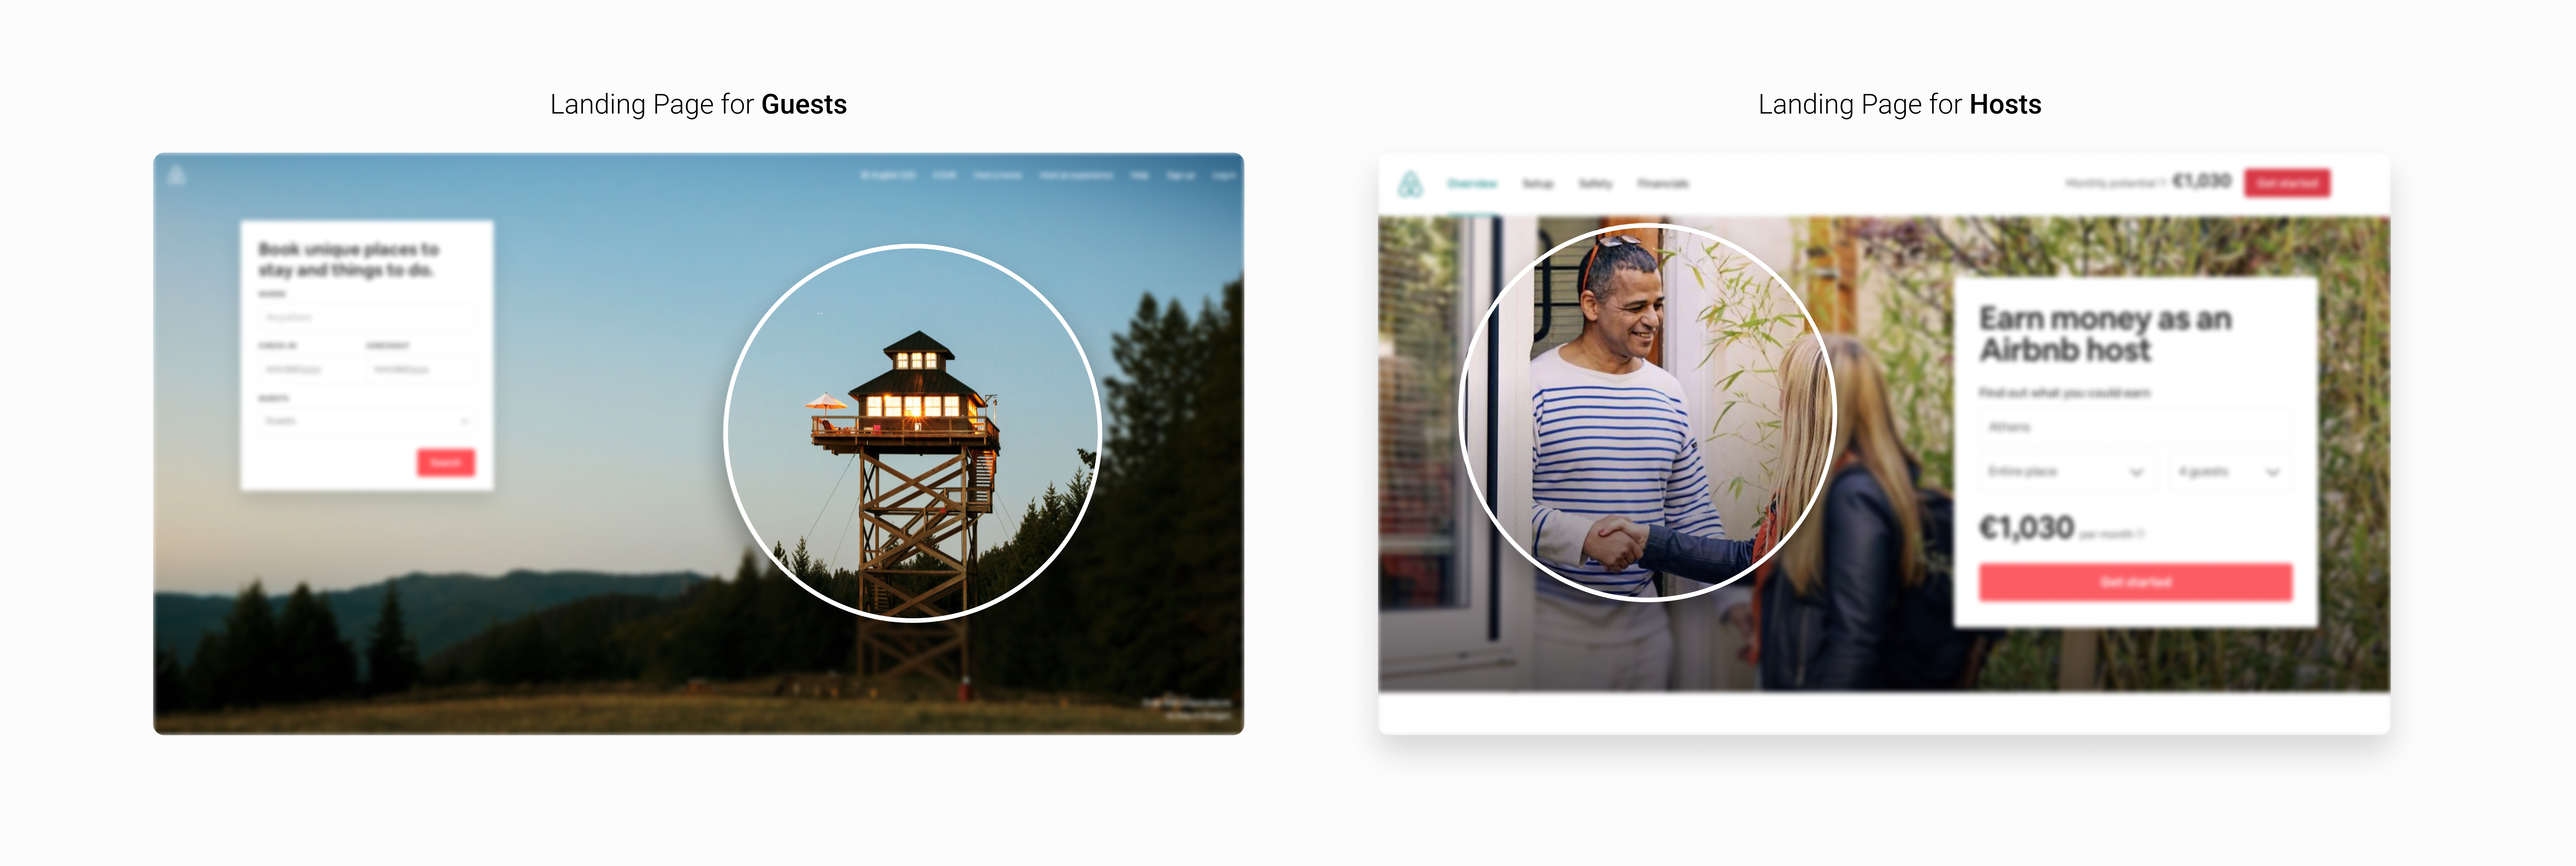 【眼动】Airbnb如何通过目标网页设计来驱动用户的行为 - 图13